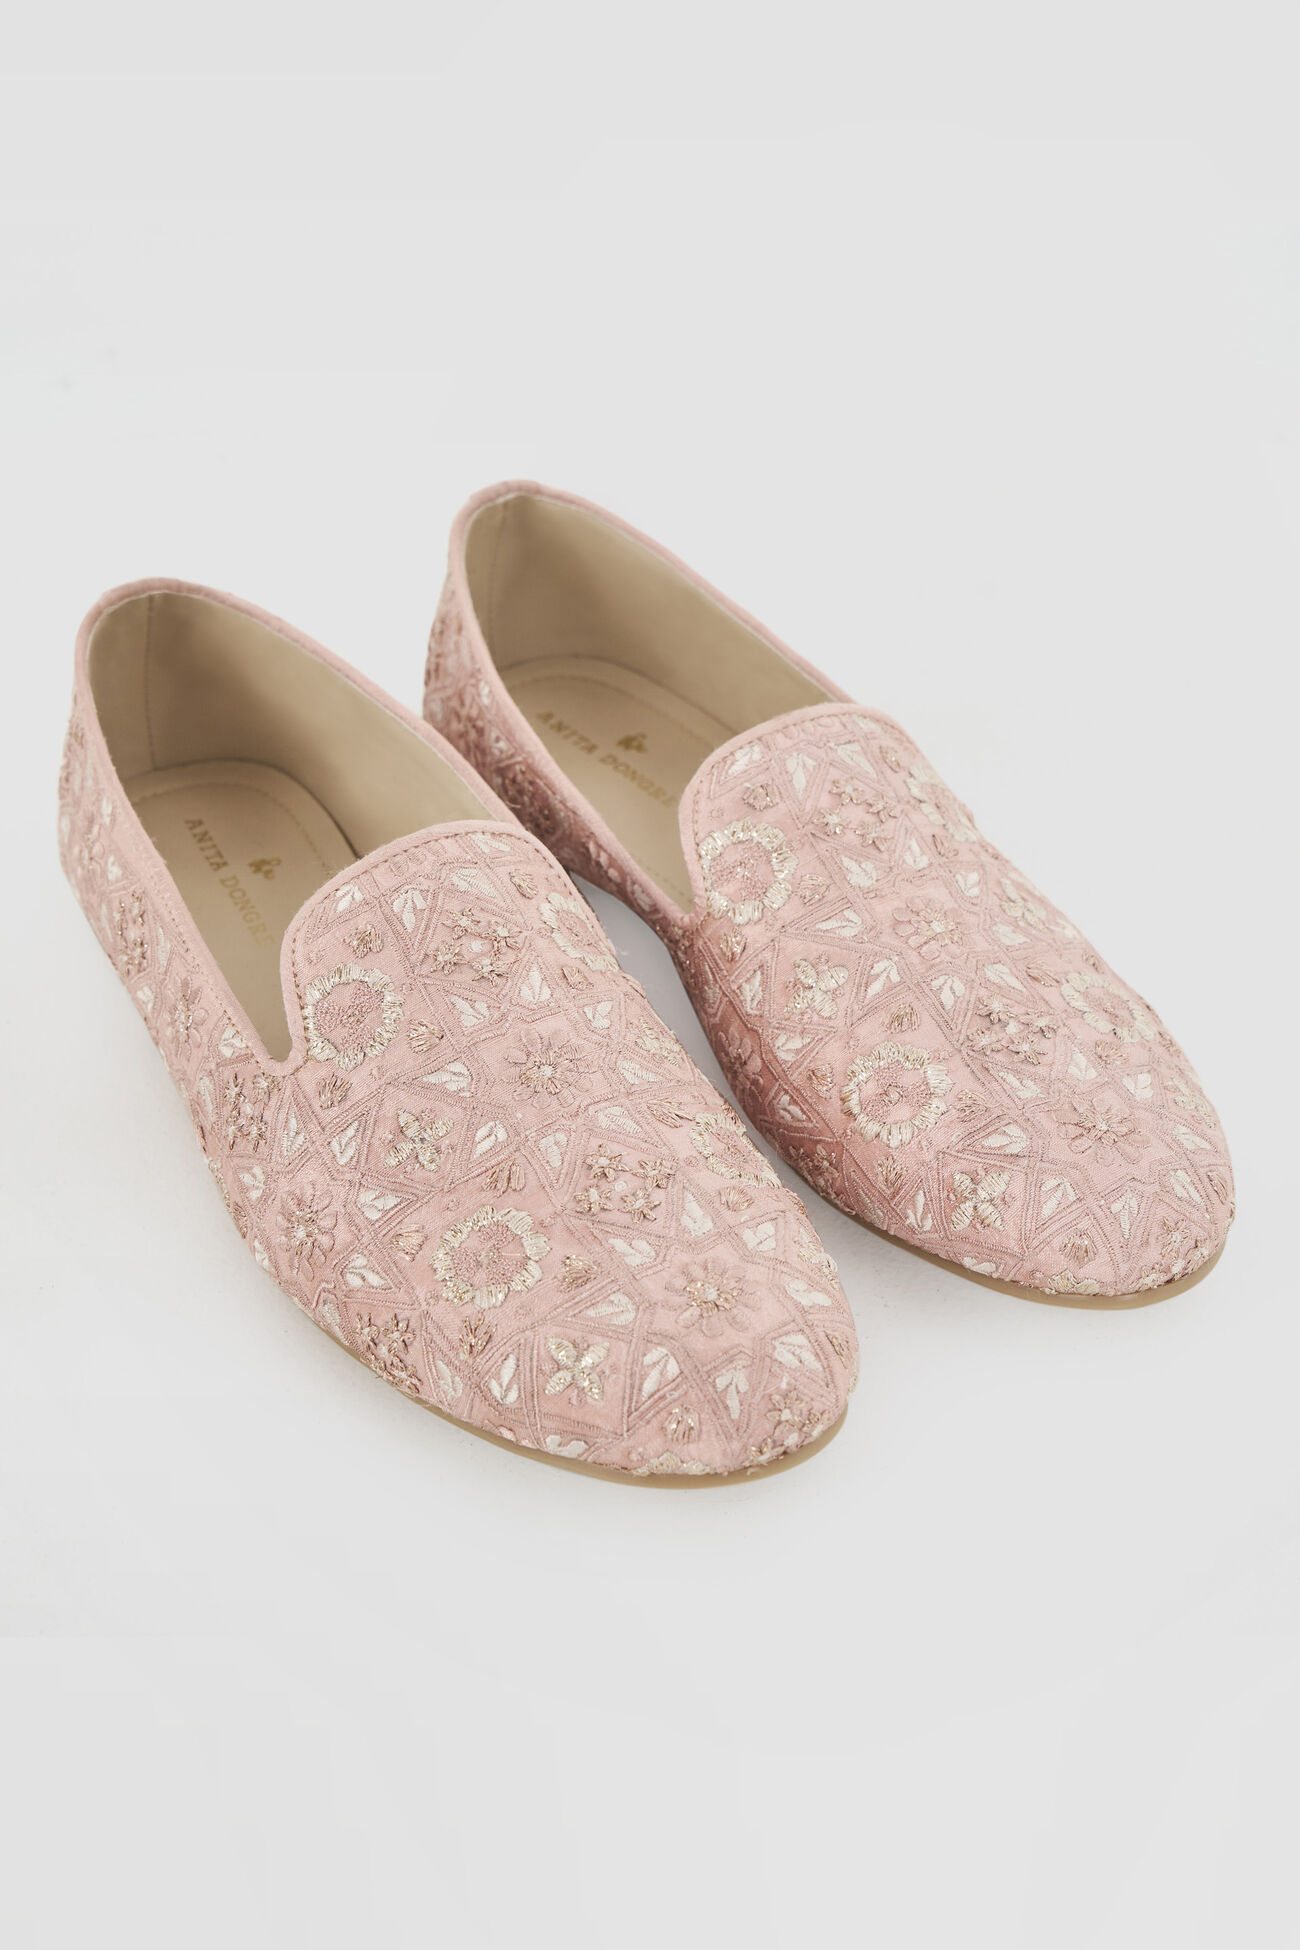 Prish Shoes, Pink, image 1